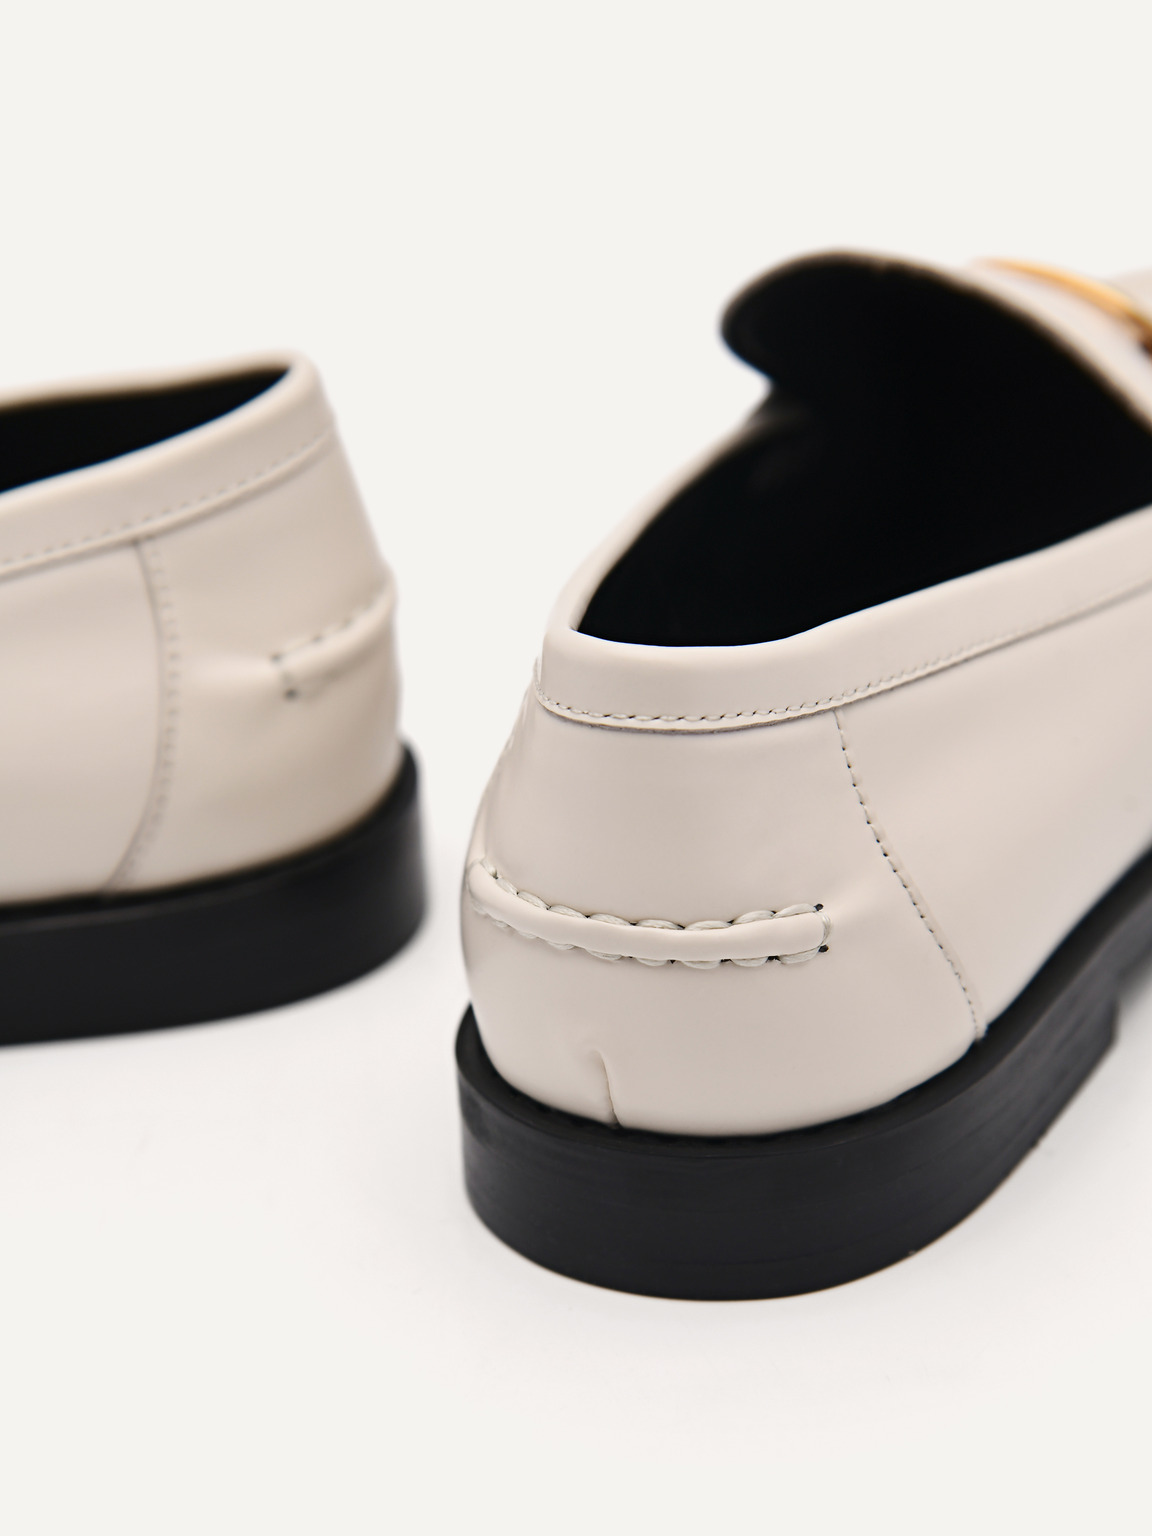 PEDRO工作室Jeanne皮革樂福鞋, 粉笔白